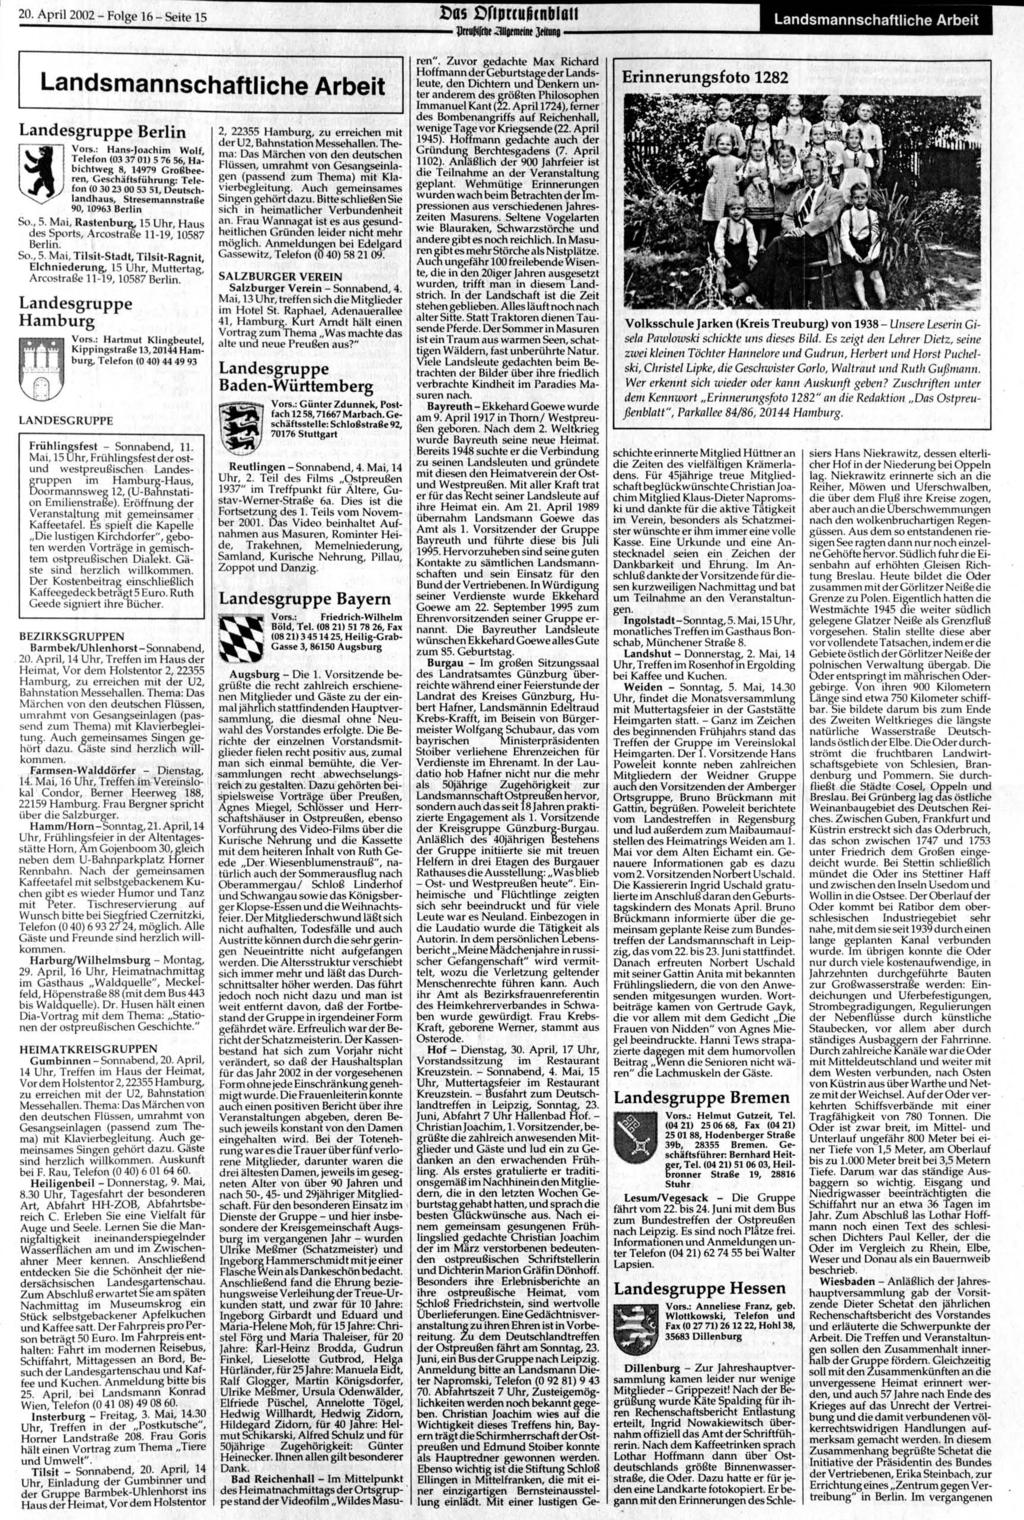 20. April 2002 - Folge 16 - Seite 15 Das Dfiprcufjcnblatl l)r f iff tit Clllflf mrint }t Kling Landsmannschaftliche Arbeit Landsmannschaftliche Arbeit Landesgruppe Berlin IS Vors.